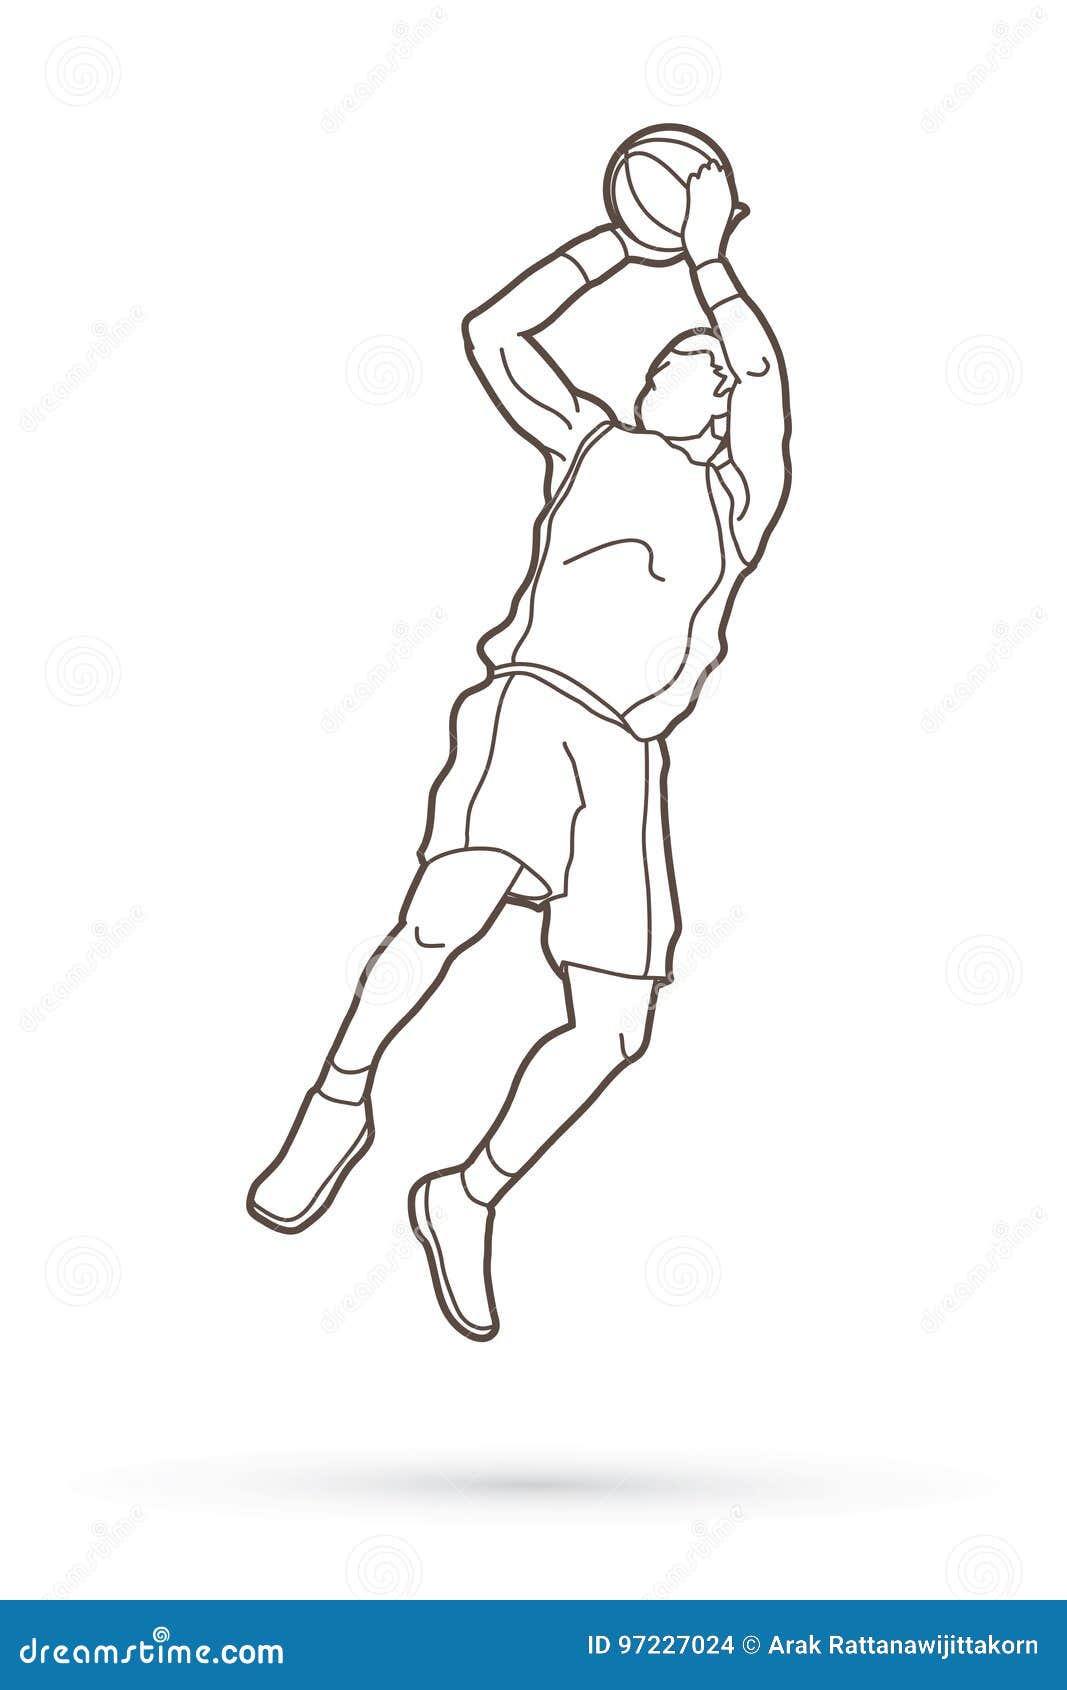 Рисунок баскетболиста в движении